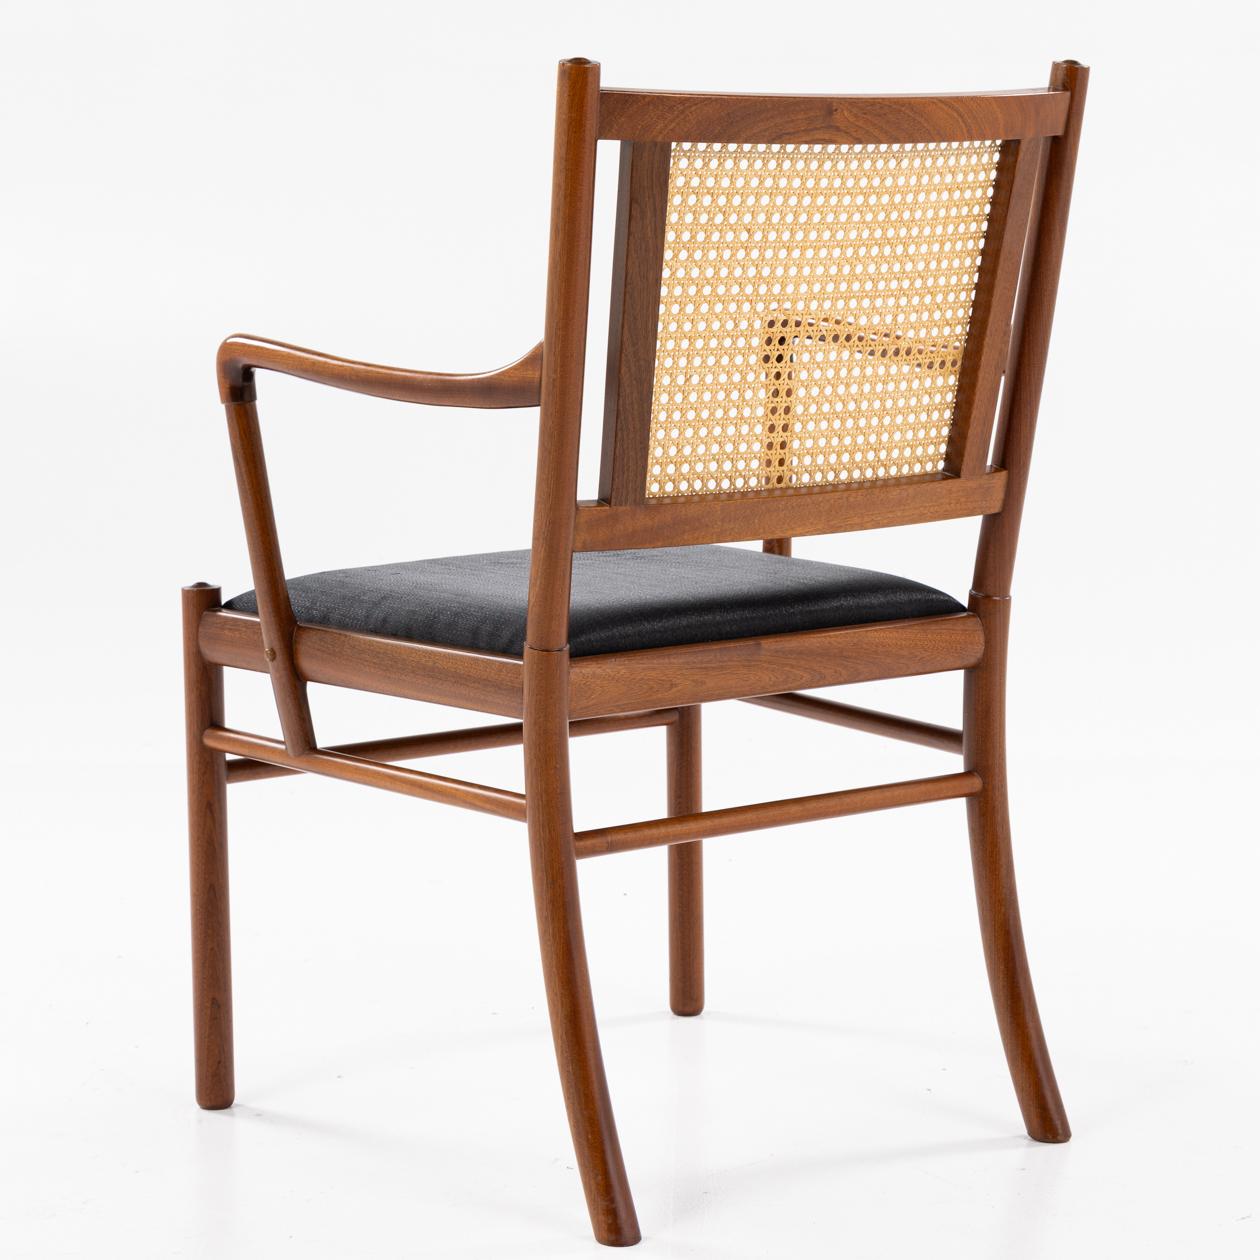 PJ 301 - Sessel aus Mahagoni, französischem Geflecht und schwarzem Rosshaar Sitz. le Wanscher / P.J Furniture